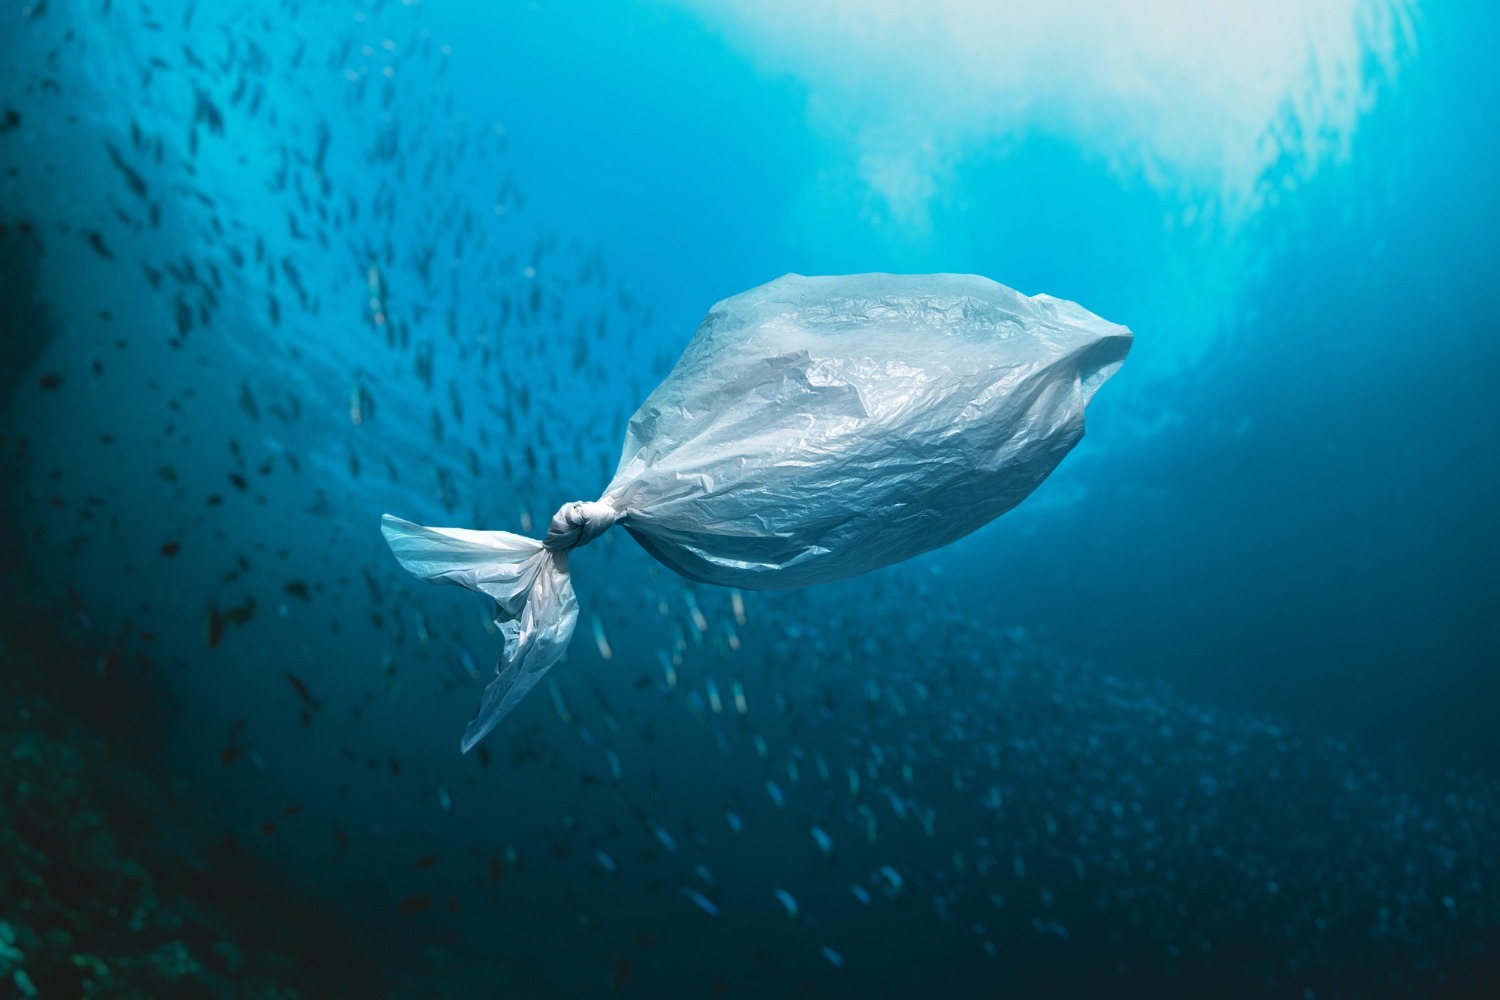 Aproximativ 1 milion de tone de aditivi din plastic se scurg în oceane în fiecare an